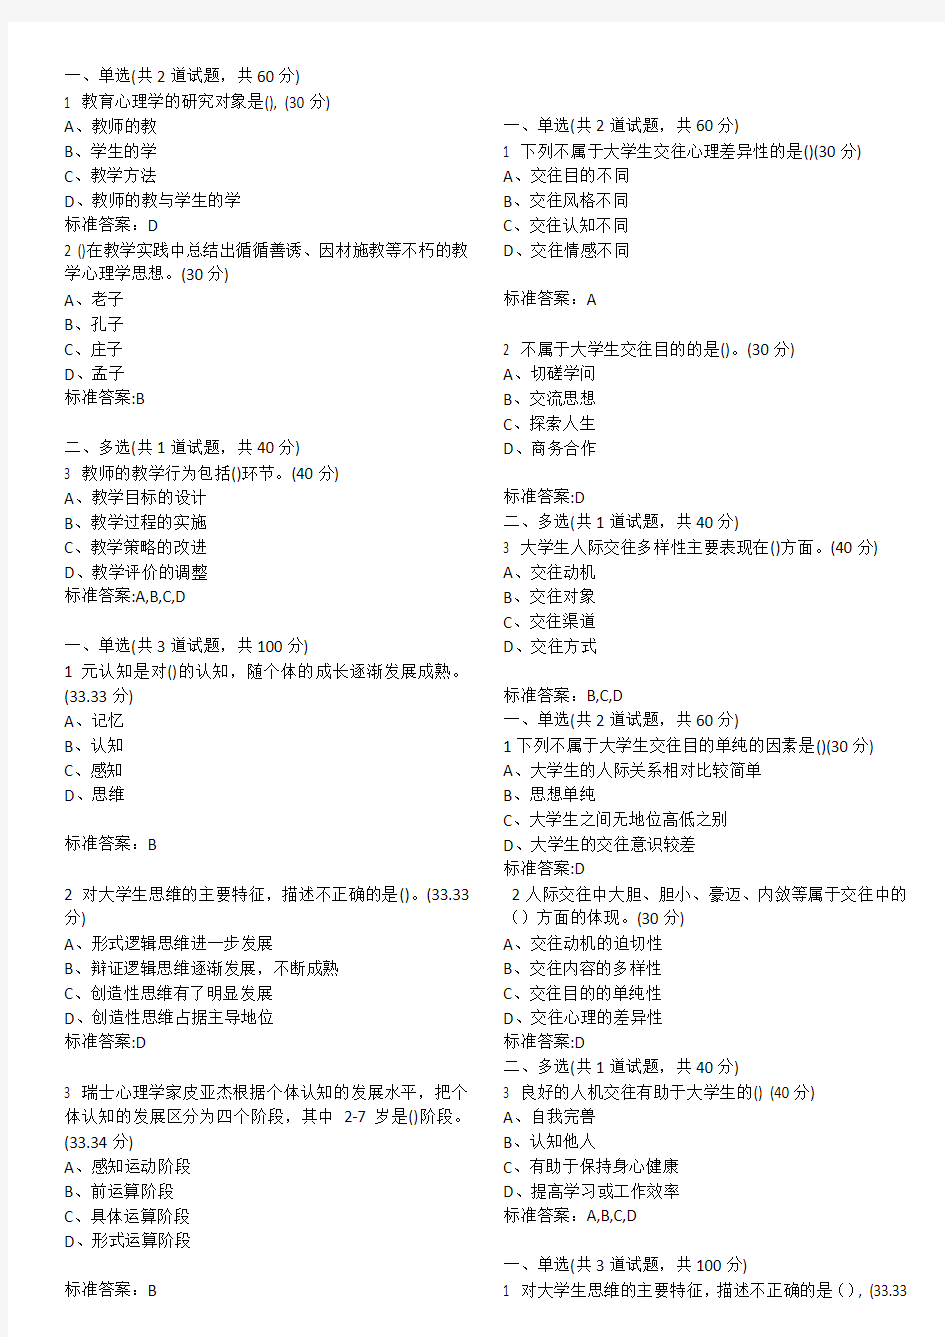 18年江苏省高校教师资格培训心理学网络培训课程选择题整理(带答案)